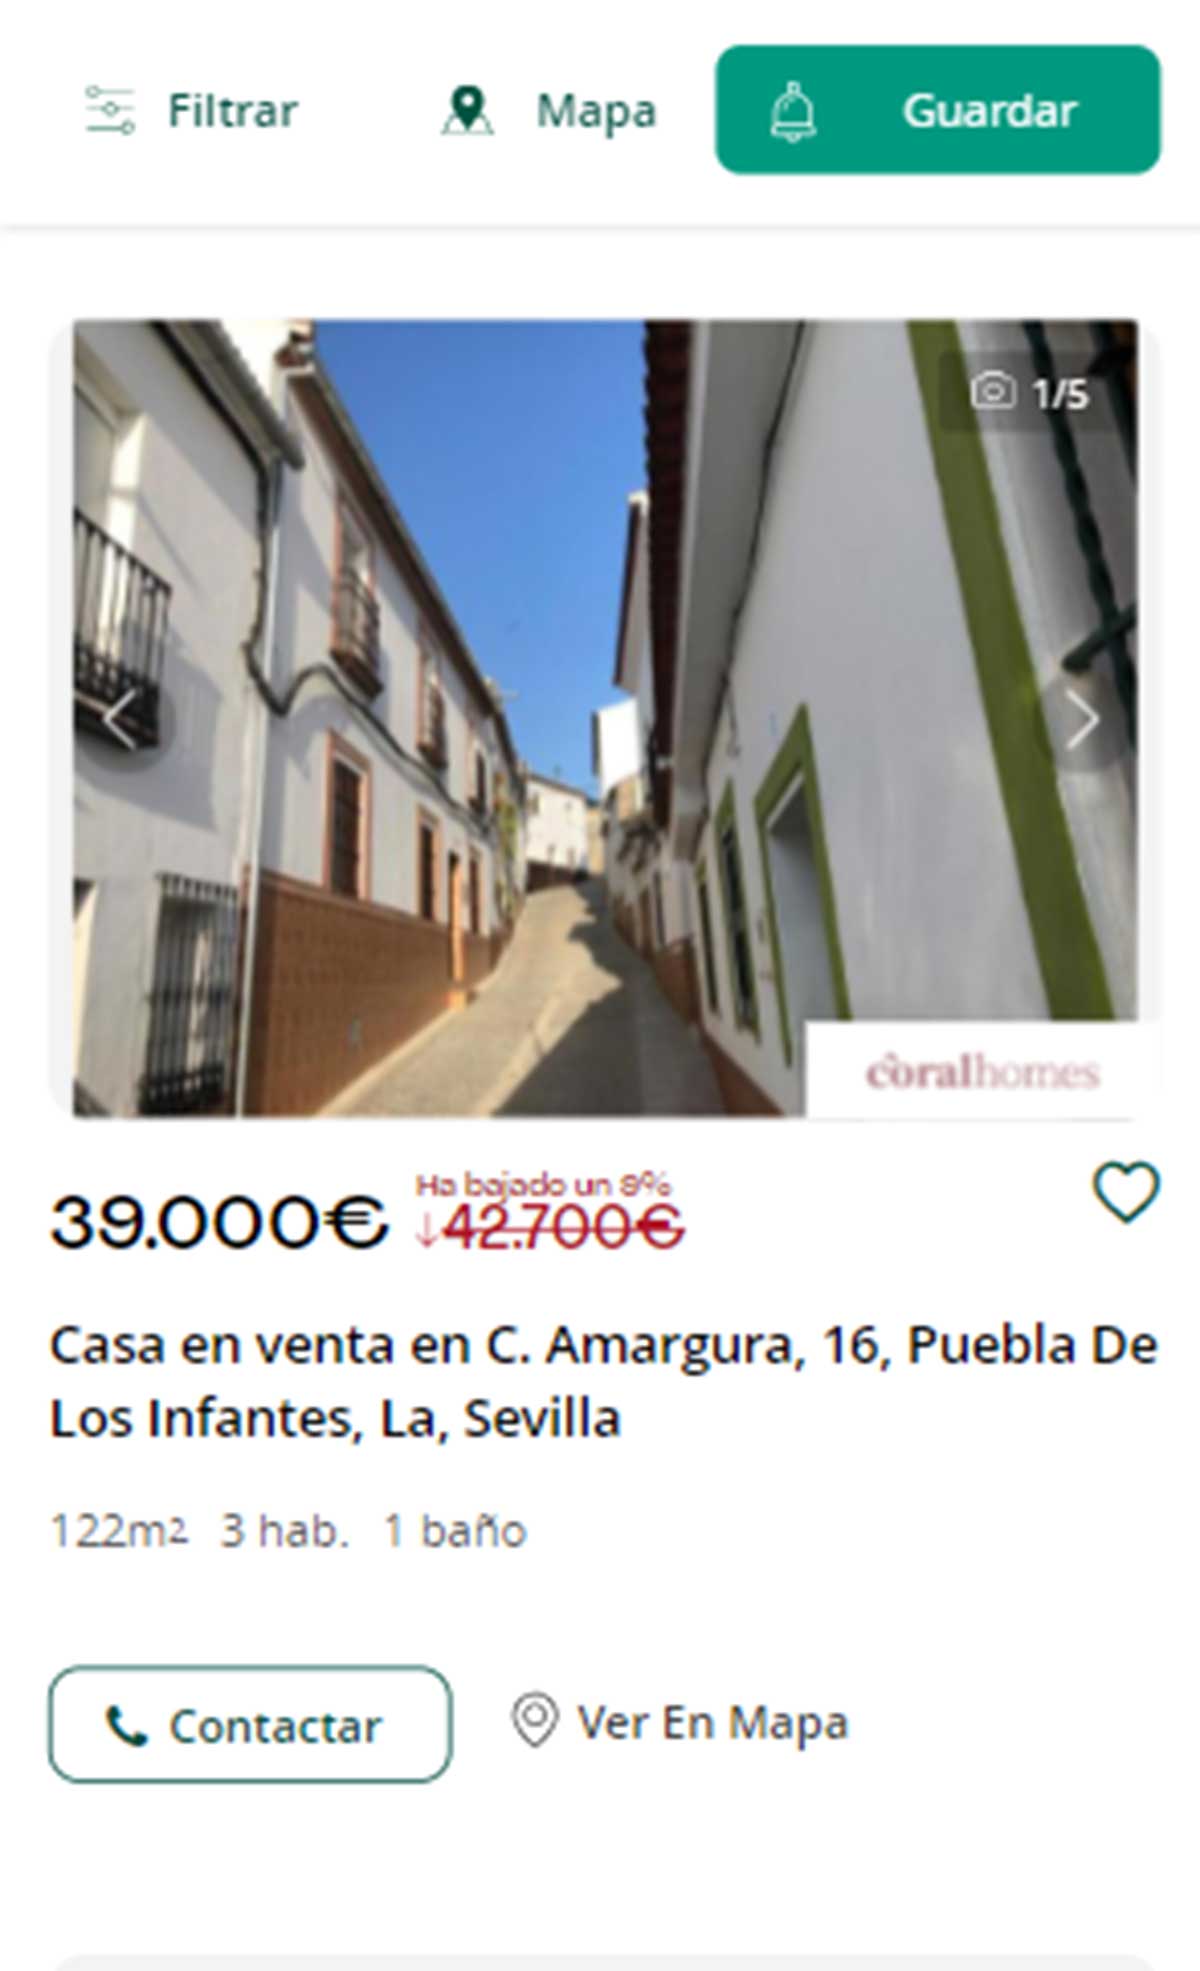 Piso en Sevilla por 39.000 euros